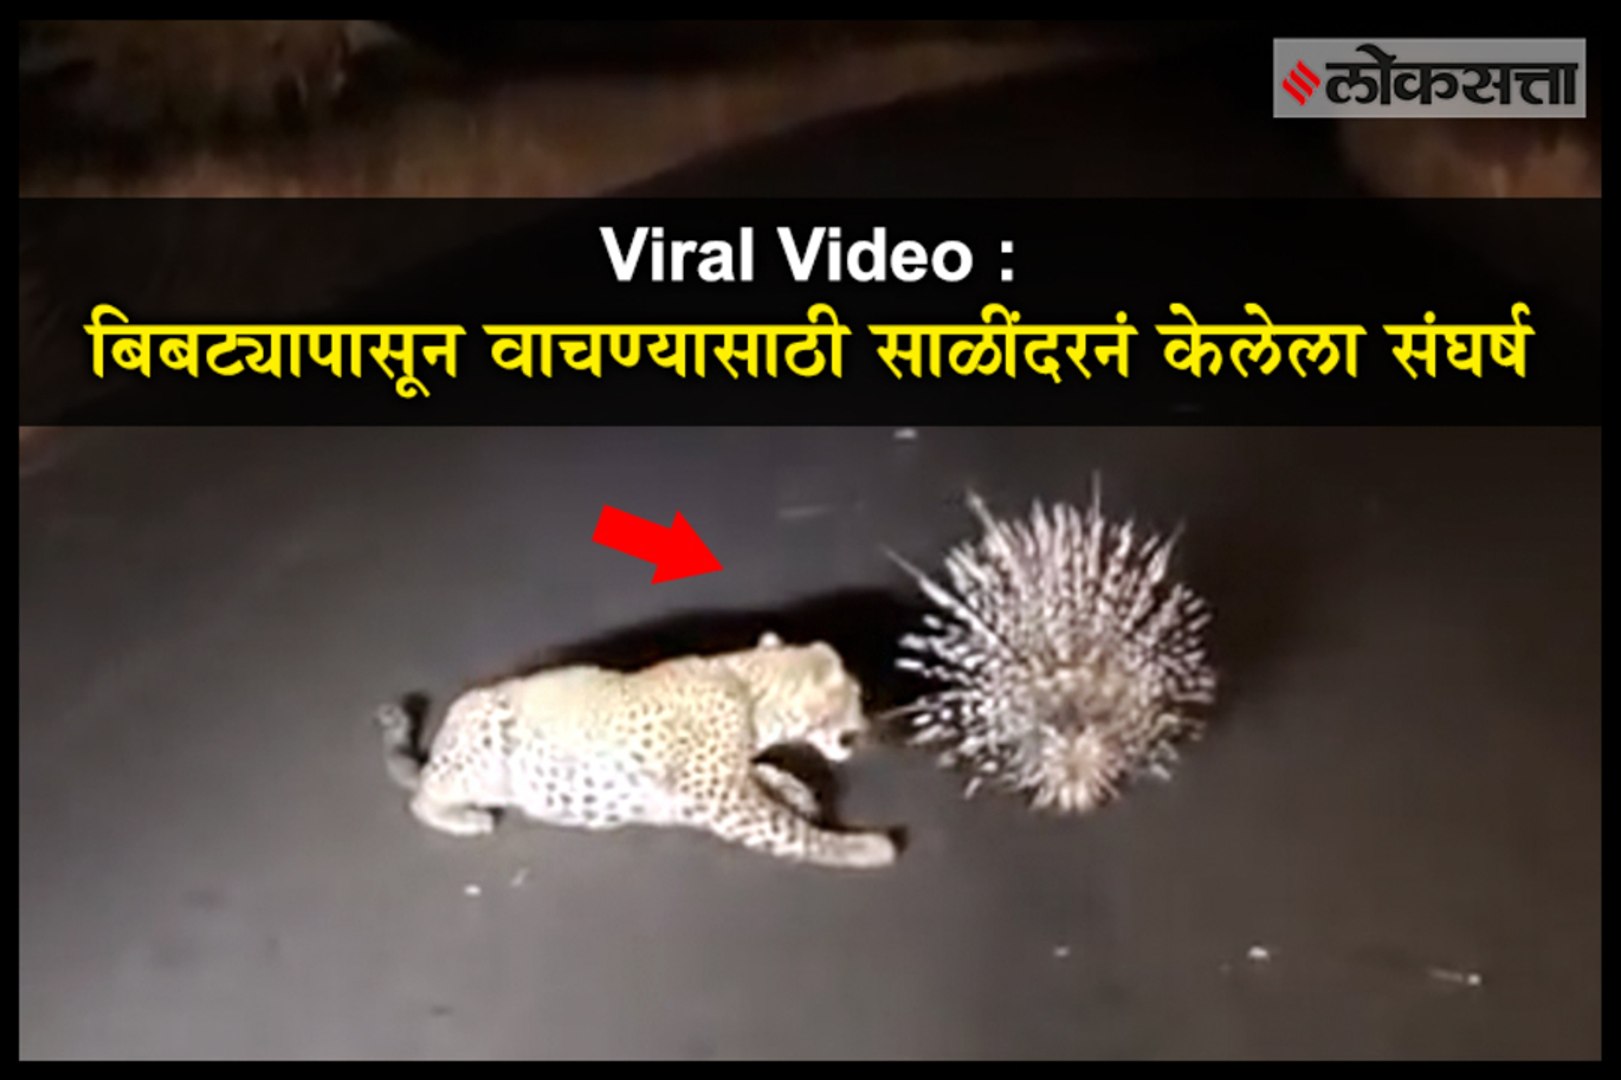 Viral Video : Porcupine defeats leopard